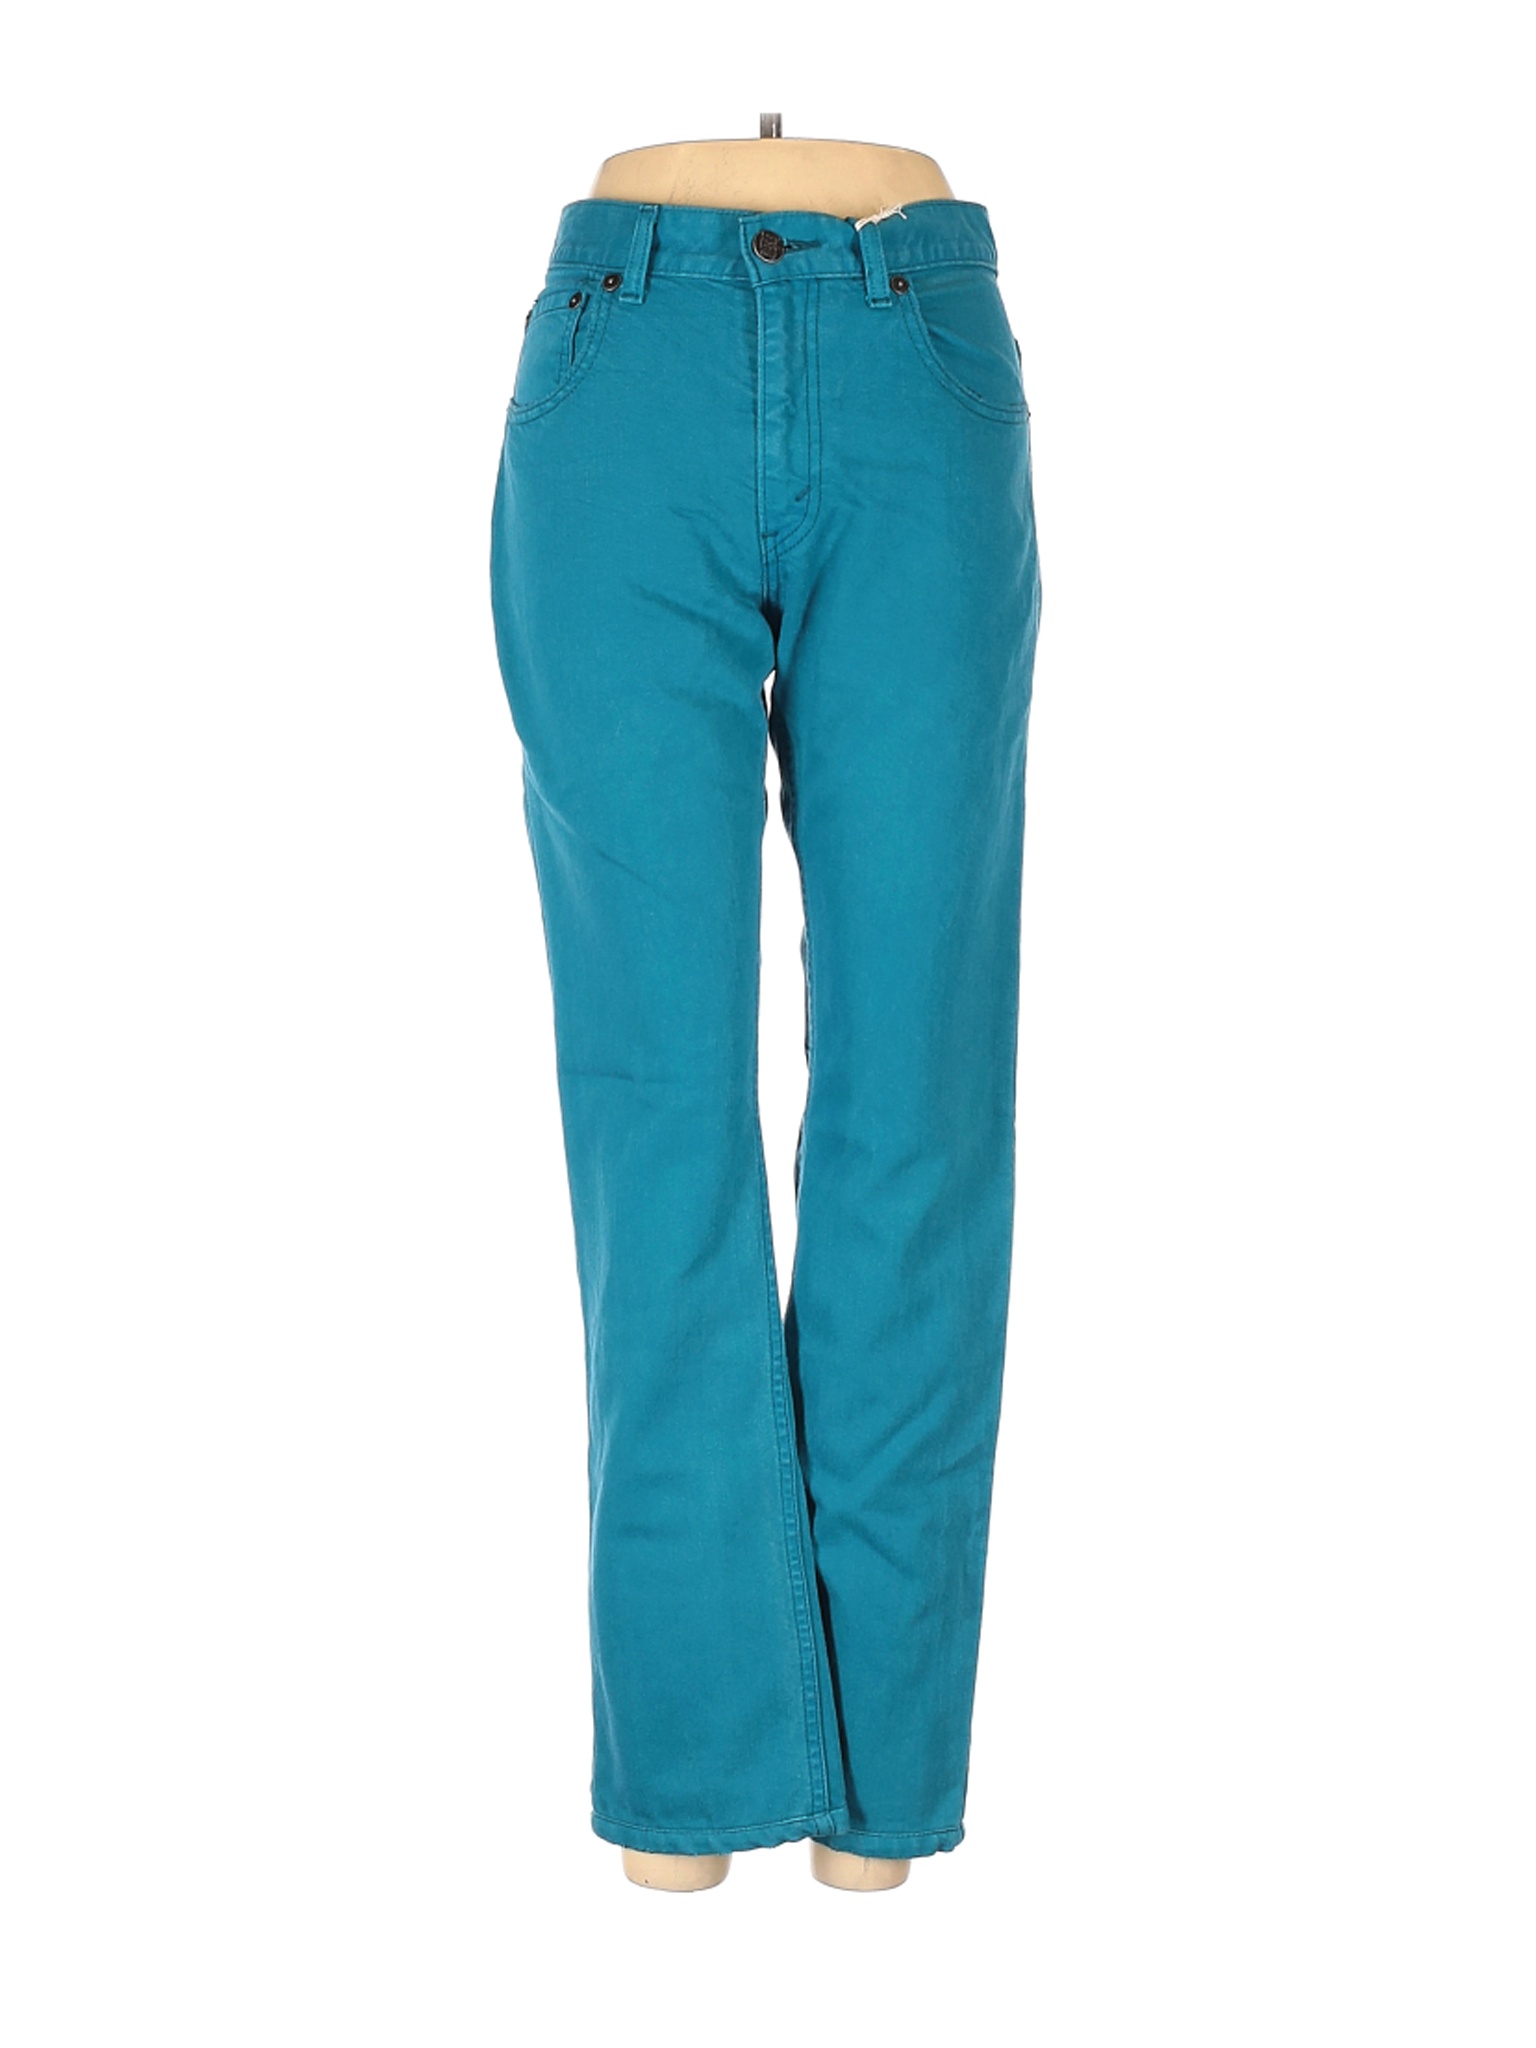 Levi's Women Green Jeans 29W | eBay